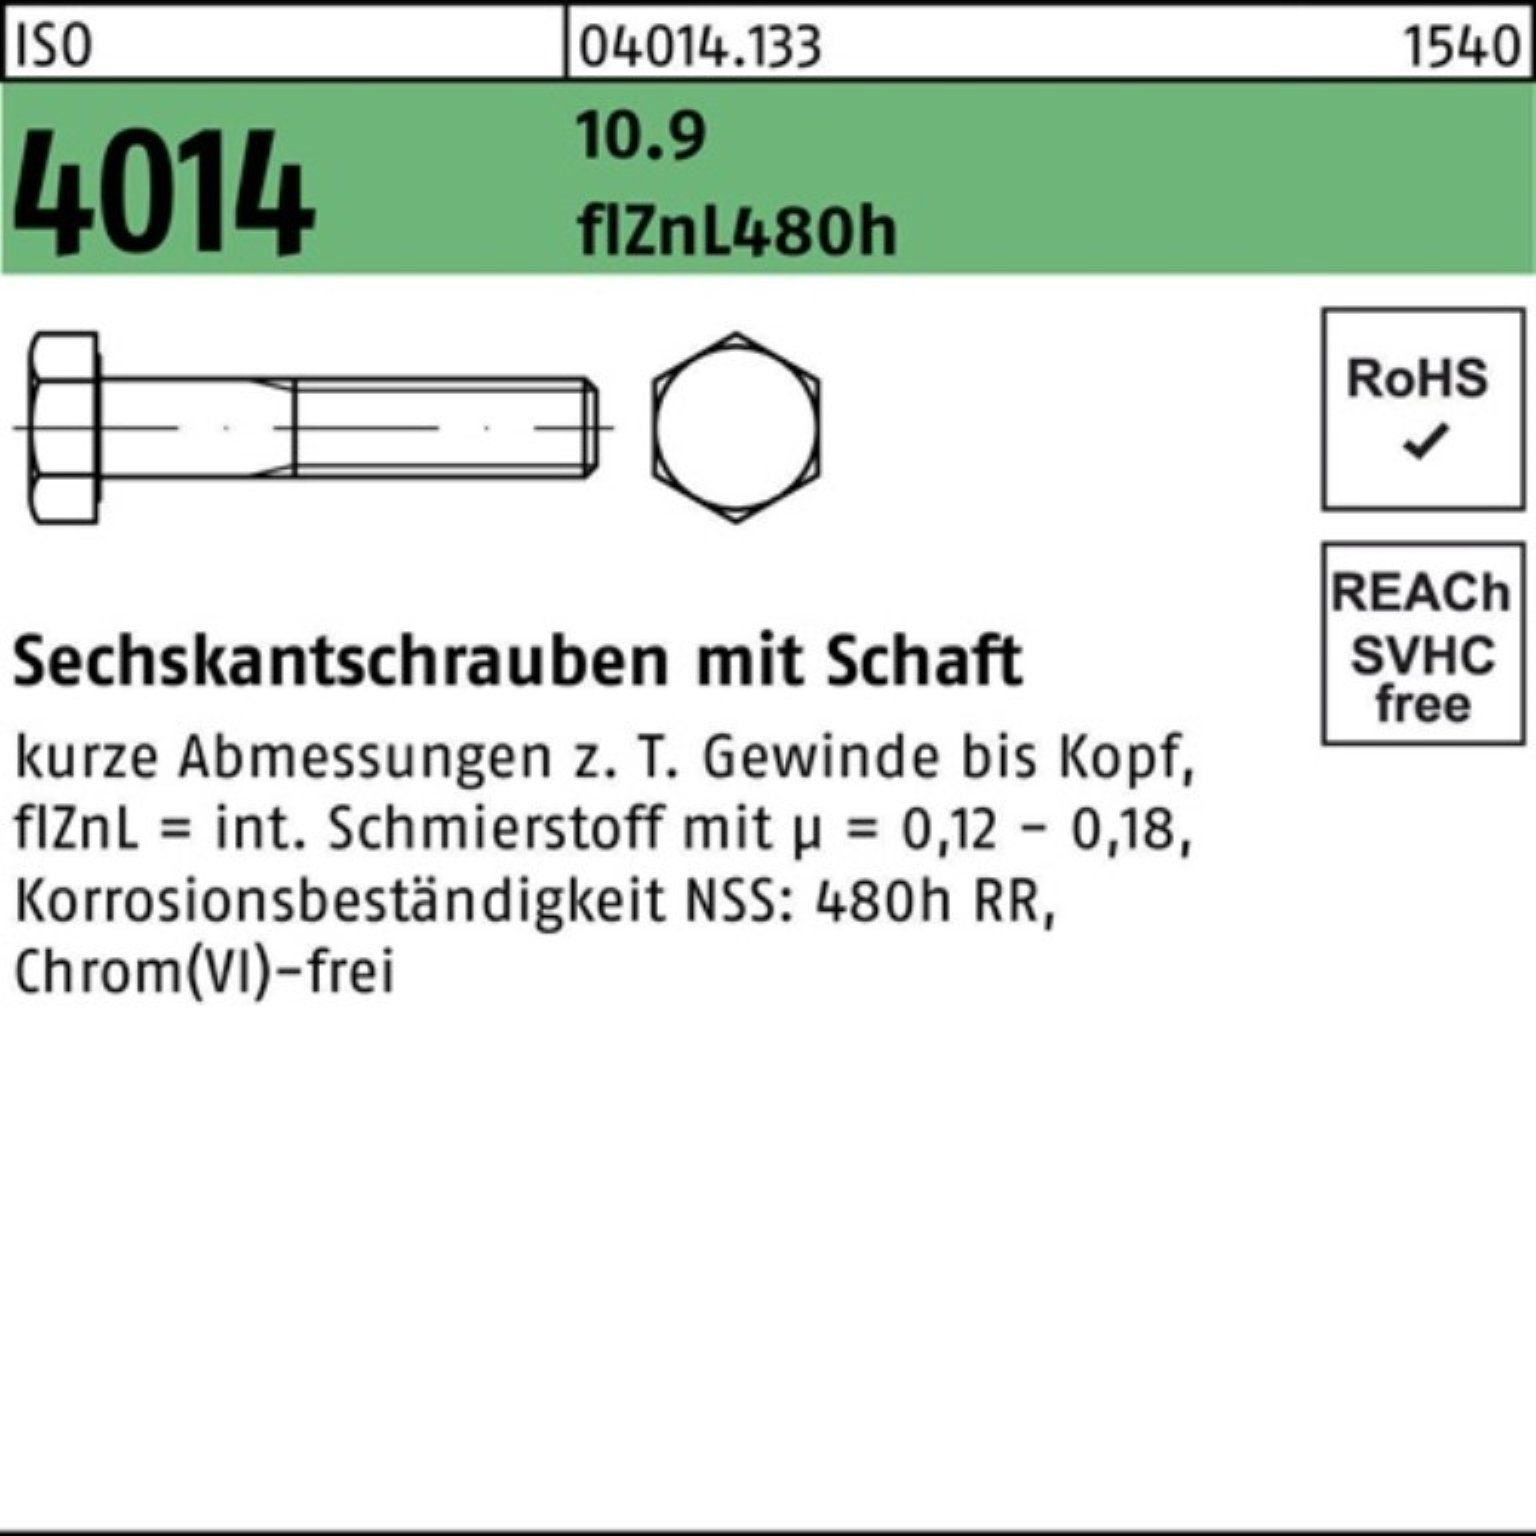 Bufab Sechskantschraube 4014 ISO 100er zinklamelle Schaft Sechskantschraube Pack 105 M20x 10.9